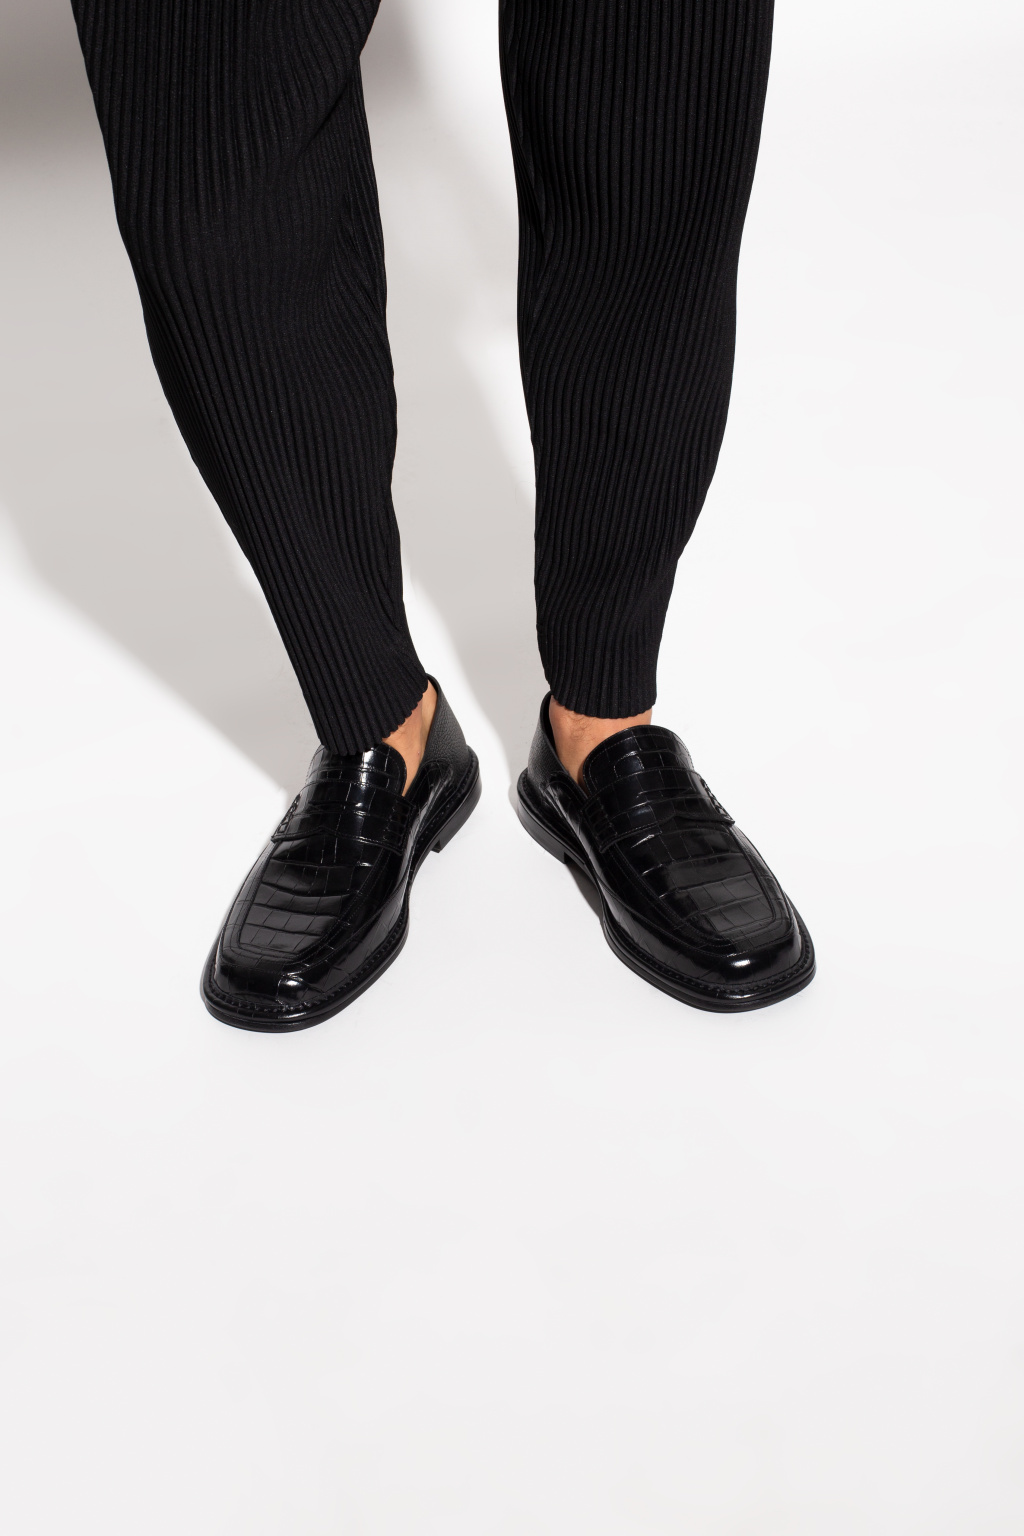 Loewe | Men's Shoes | Vitkac